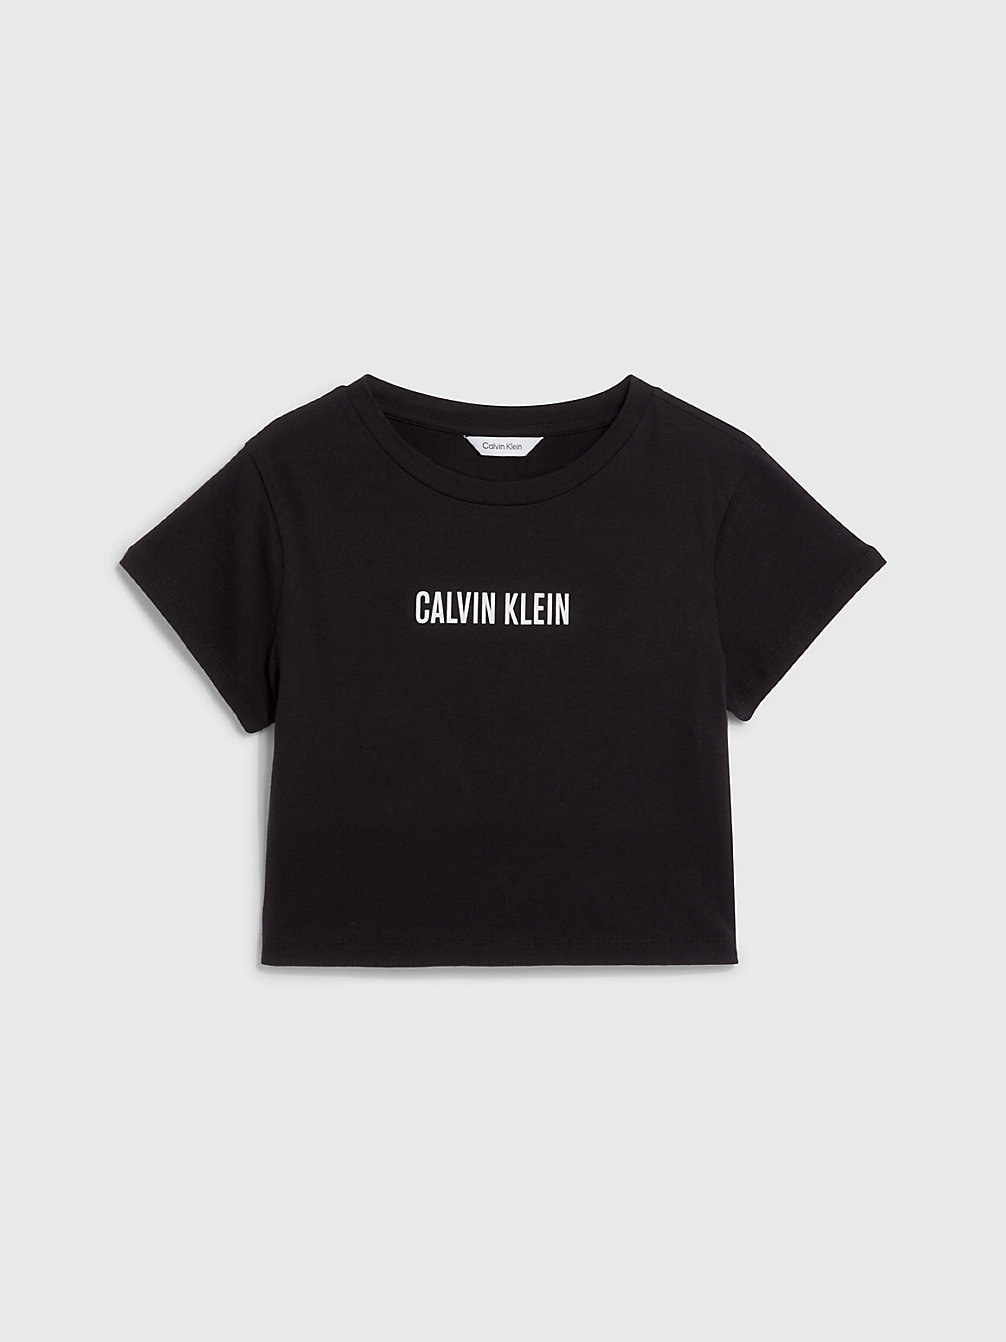 PVH BLACK > Cropped Strand-T-Shirt Voor Meisjes - Intense Power > undefined girls - Calvin Klein